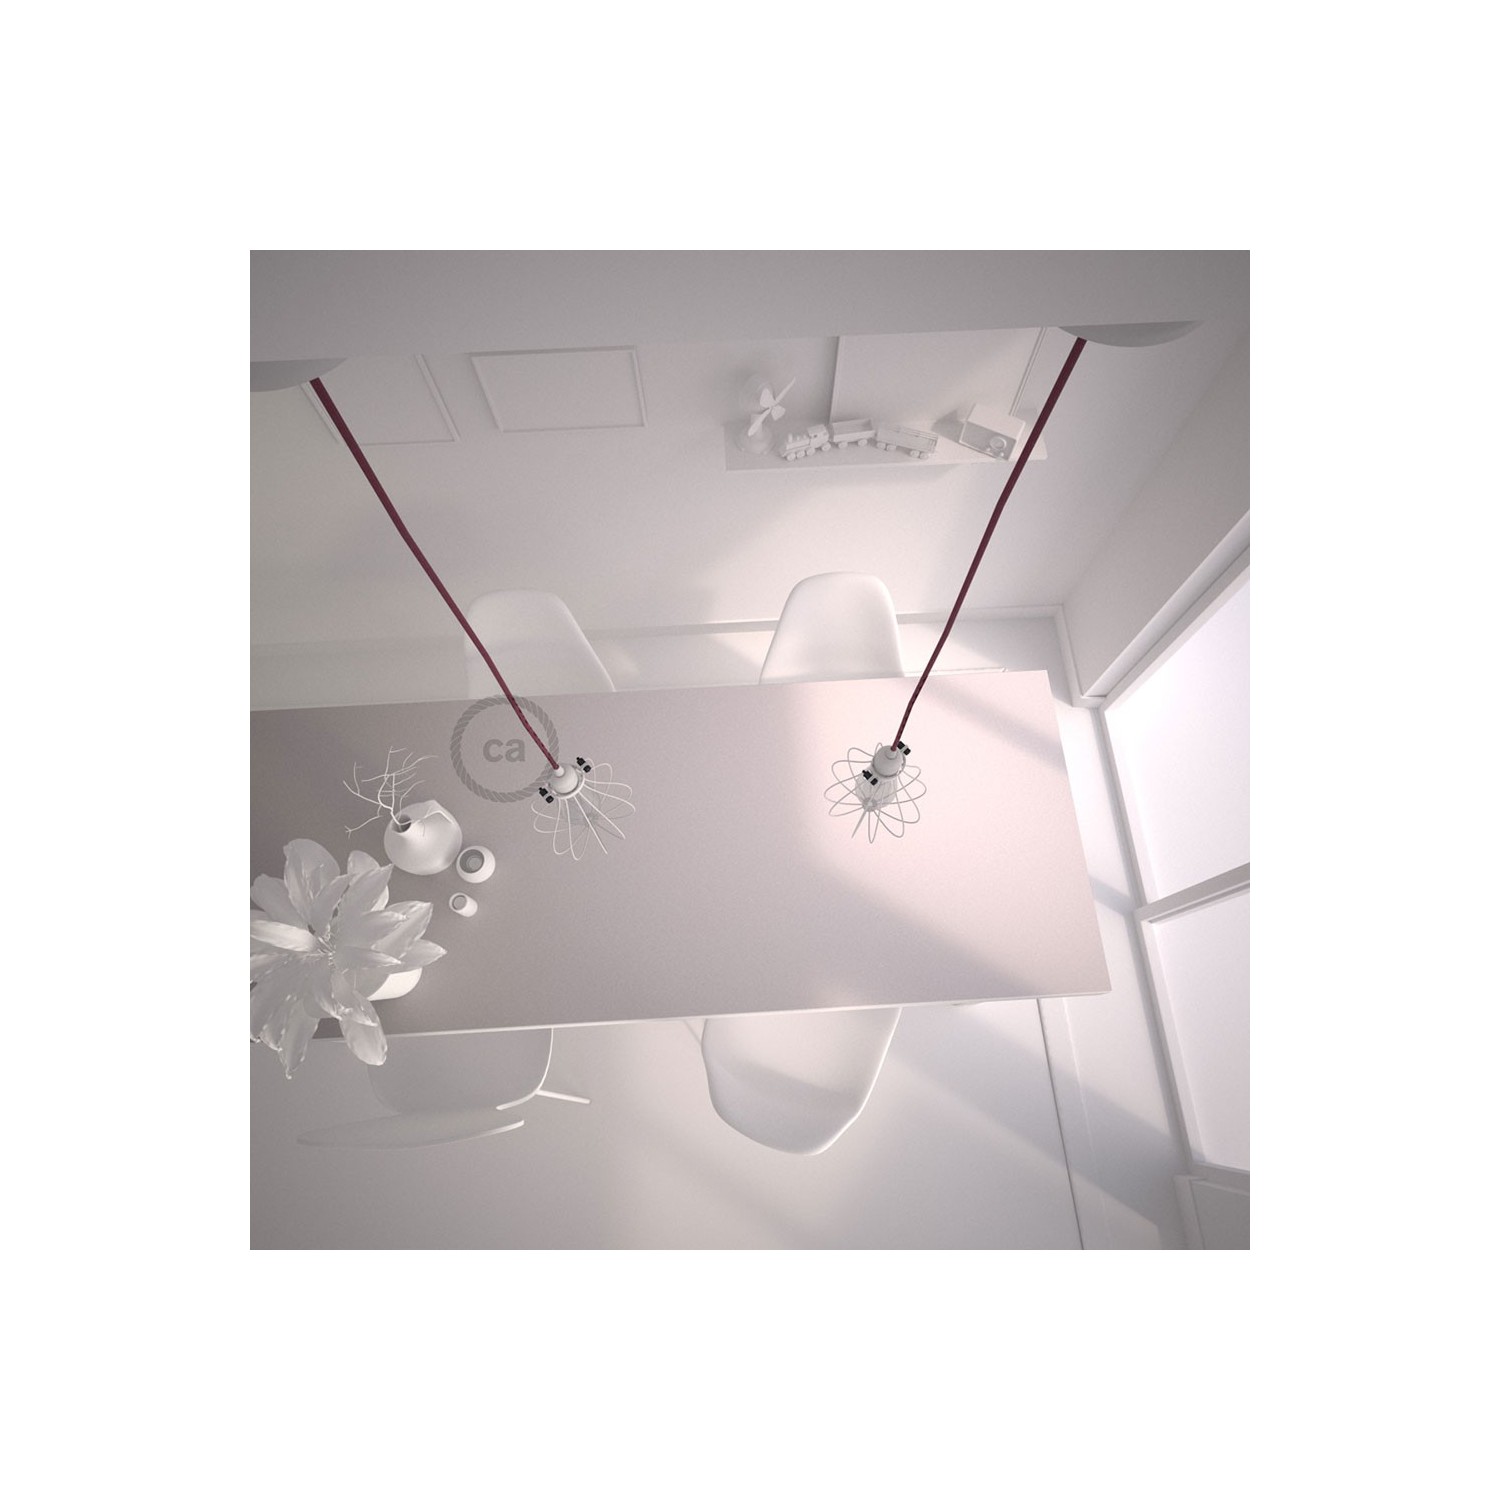 Lámpara colgante con jaula Drop color blanco y cable RC32 Algodón Rojo Violeta